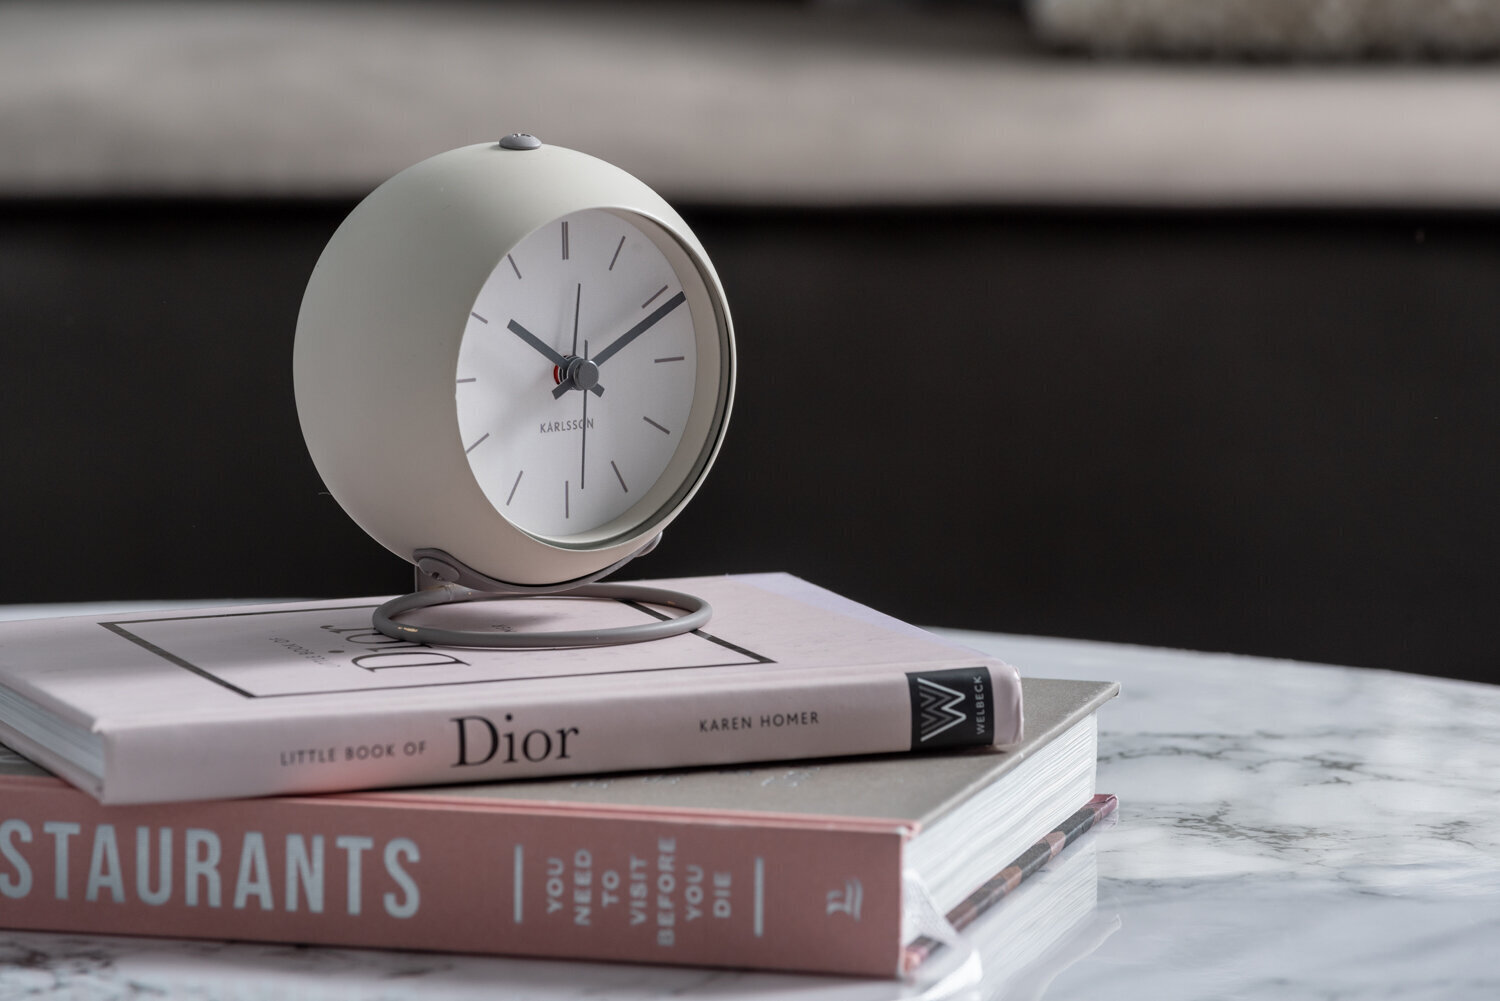 Žadintuvas Globe ø9,5 cm, pilkas kaina ir informacija | Laikrodžiai | pigu.lt